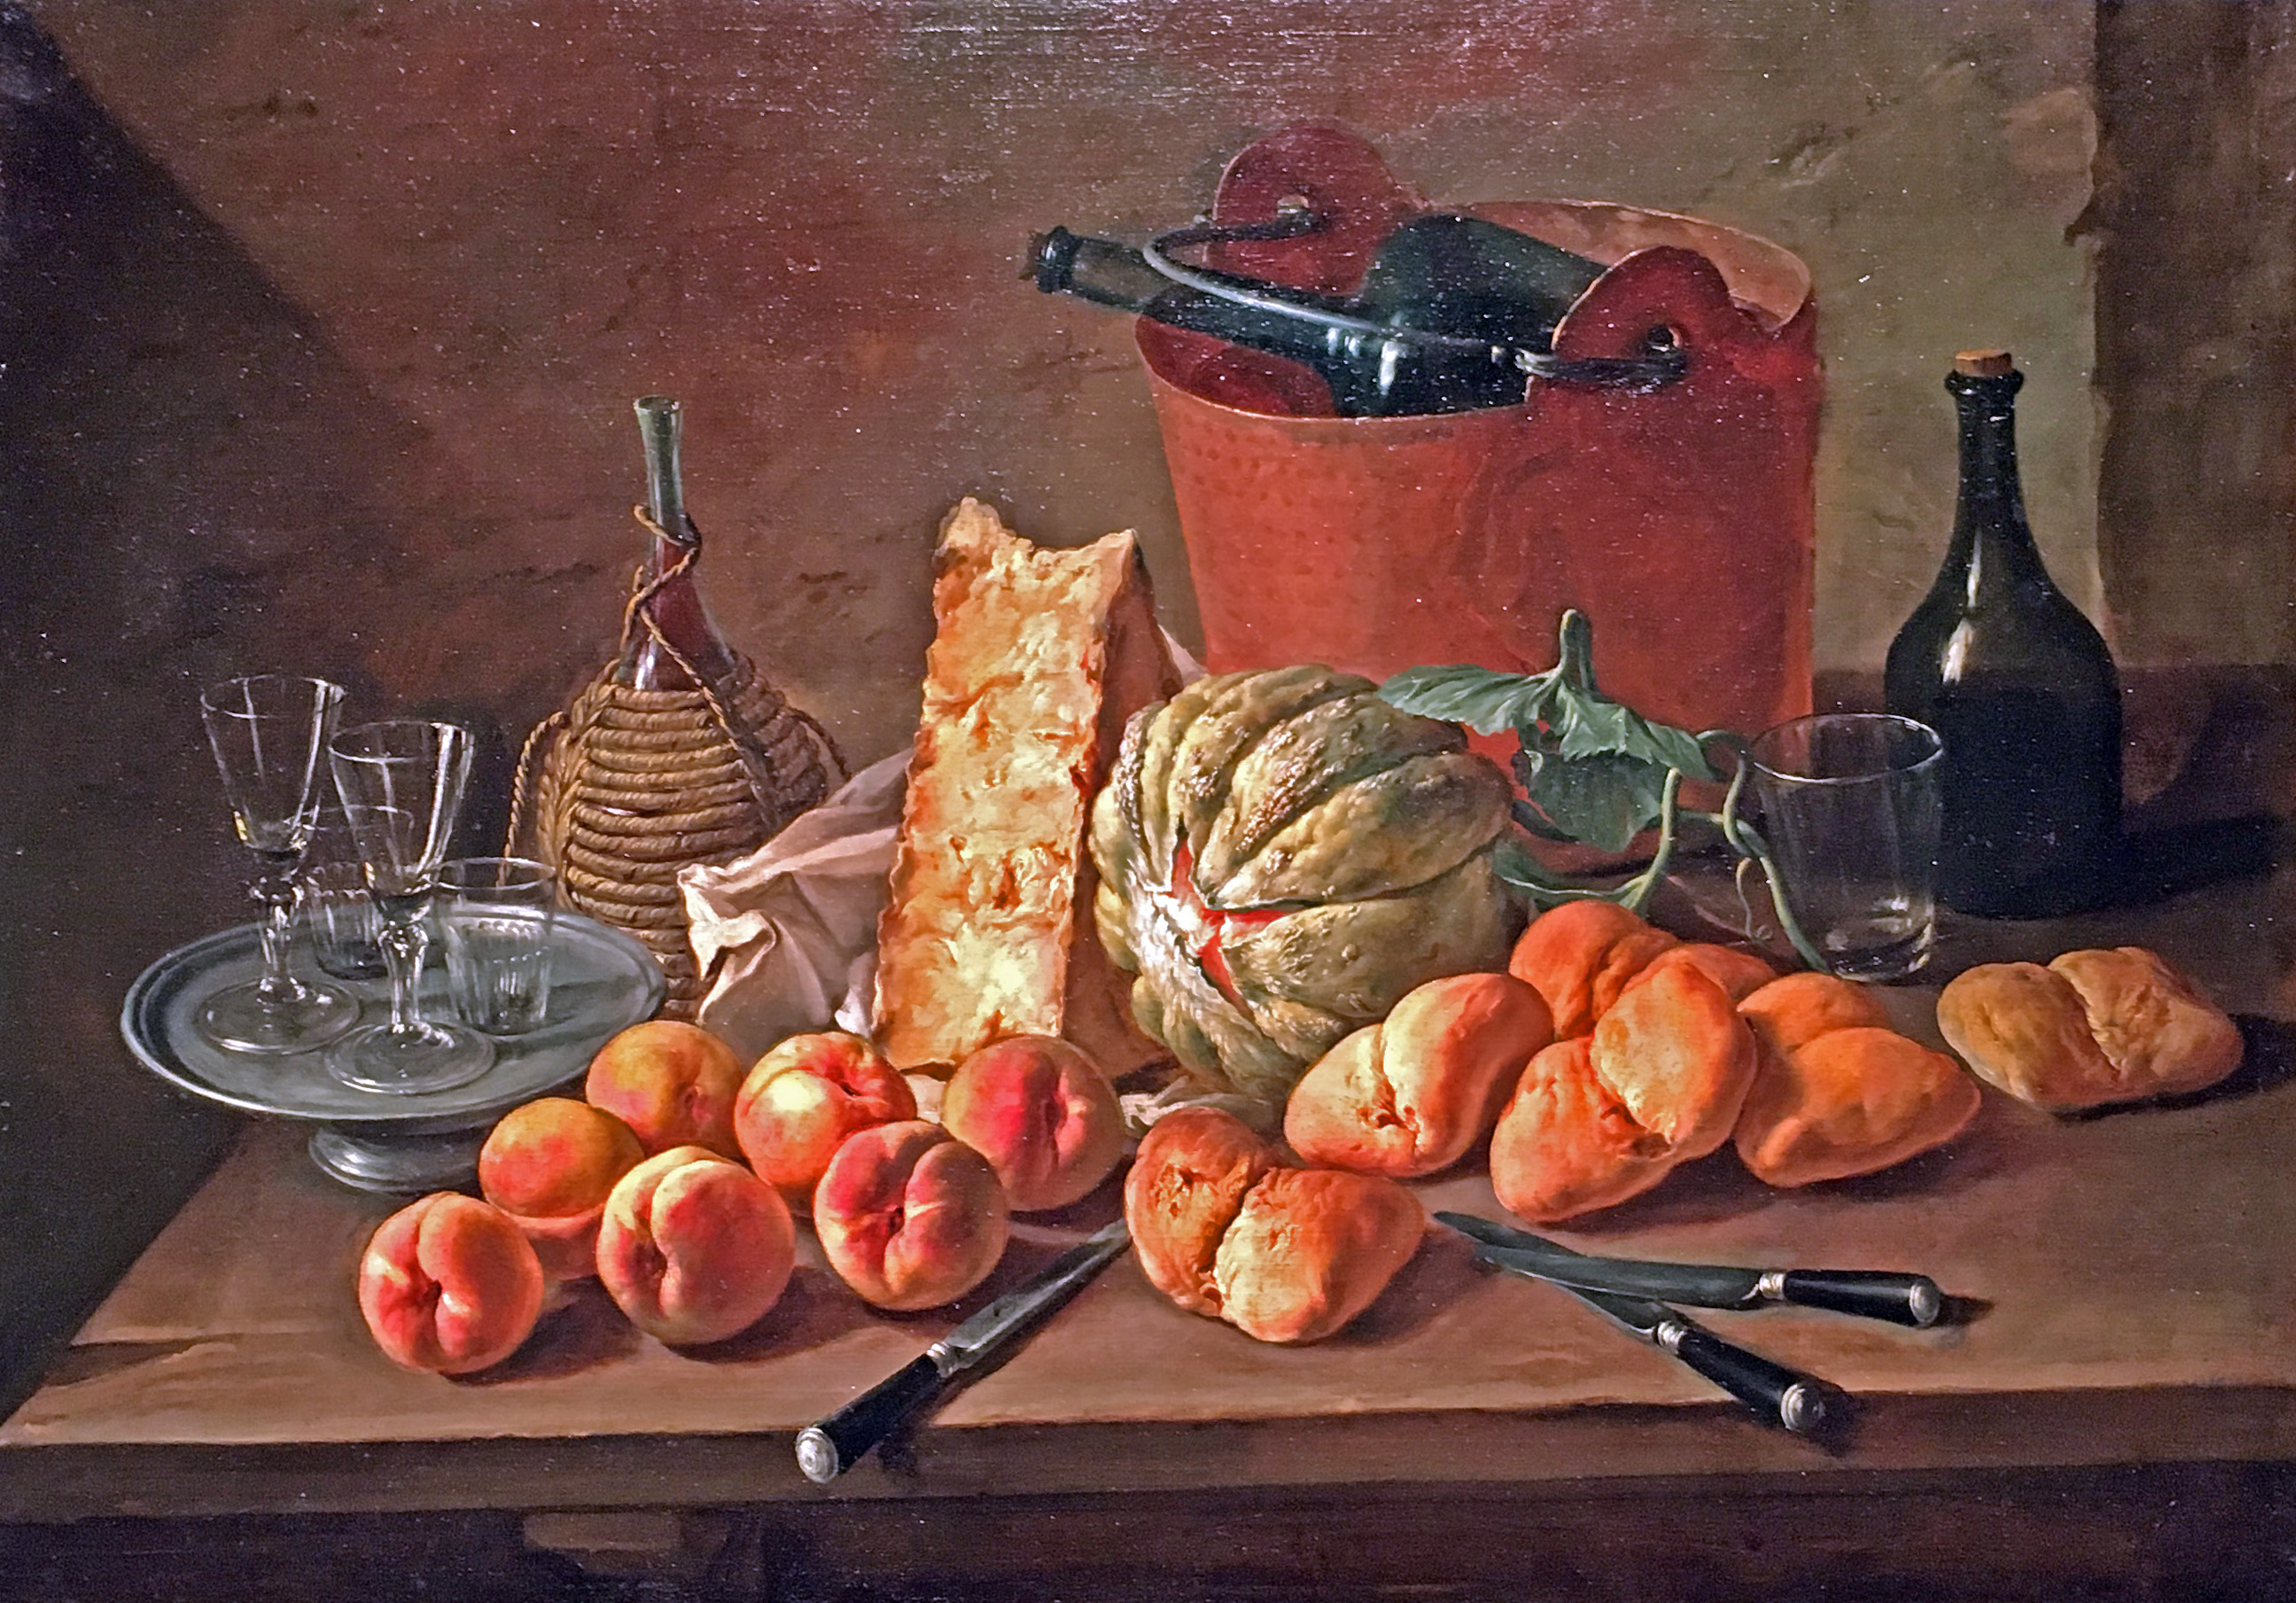 giacomo-deruti-kitchen-still-life-33-x-47-milan-1698-1768